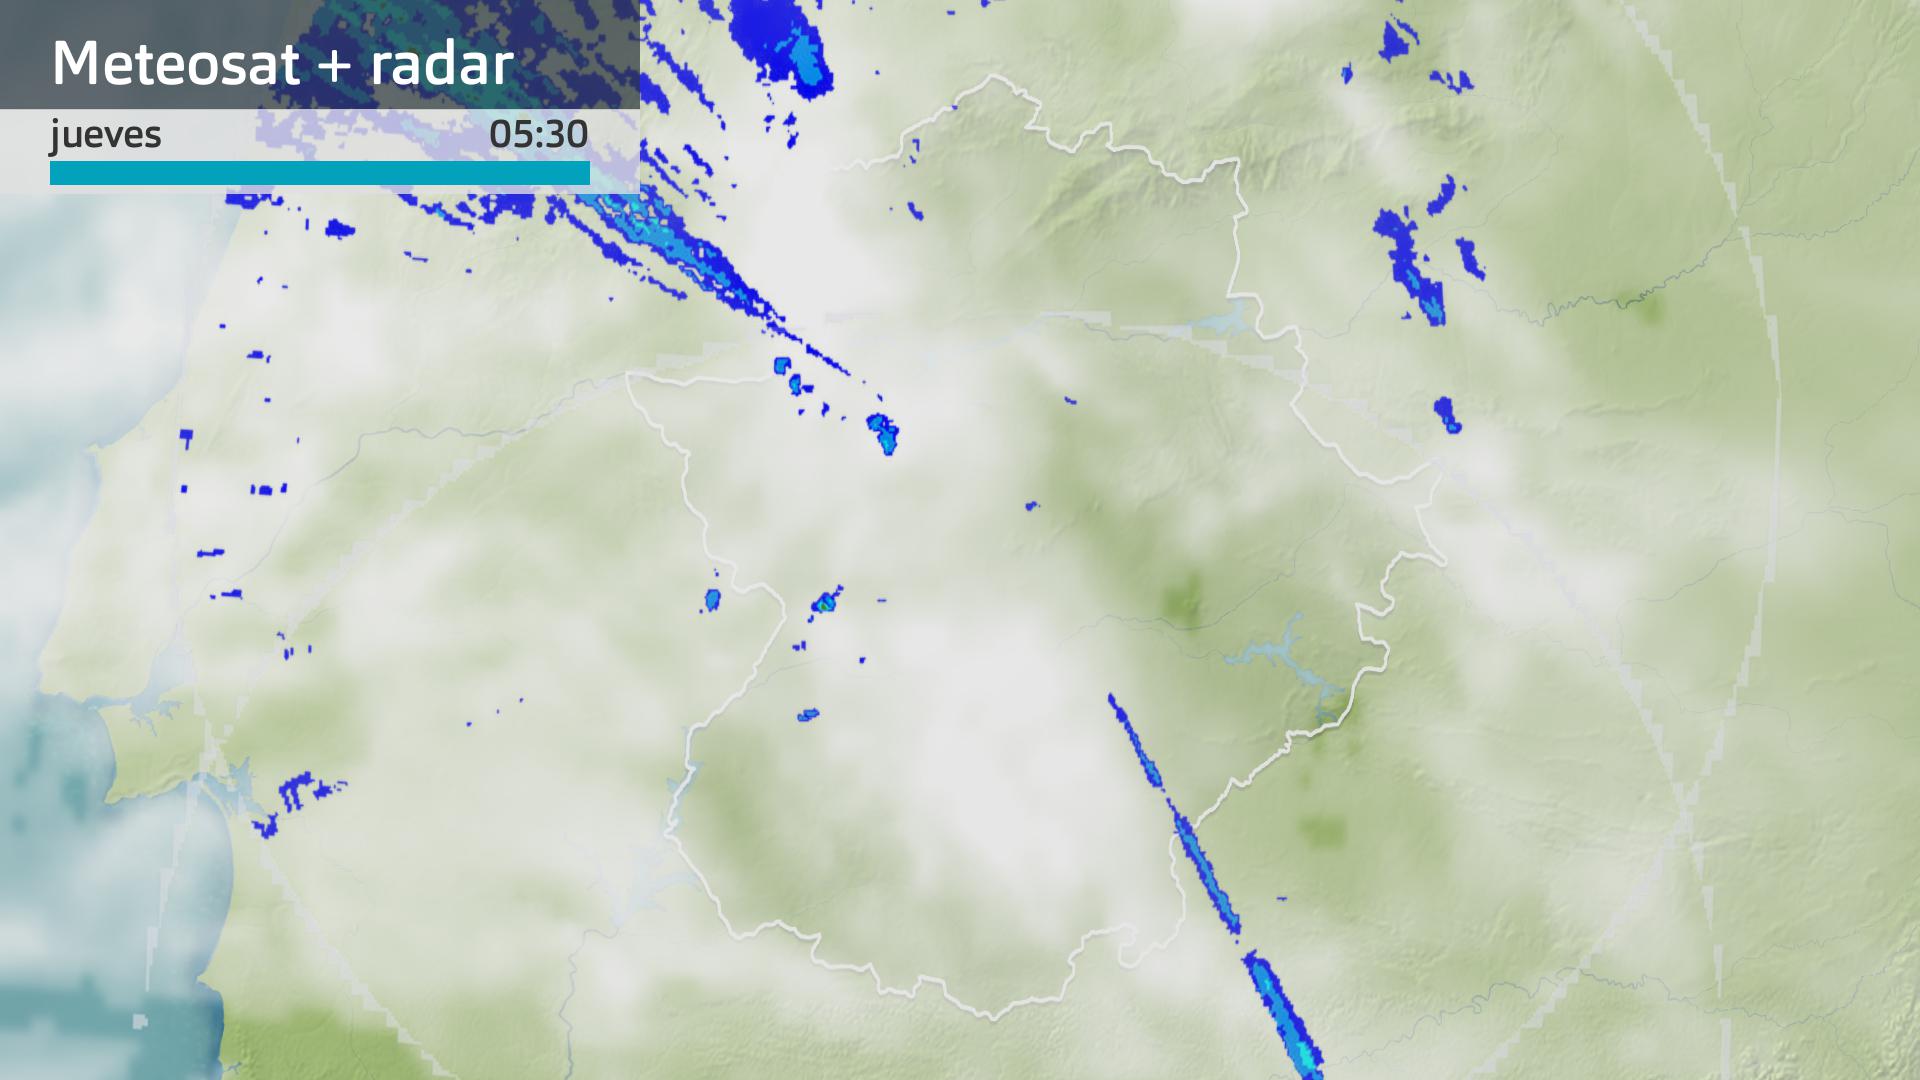 Imagen del Meteosat + radar meteorológico jueves 7 de diciembre 5:30 h.